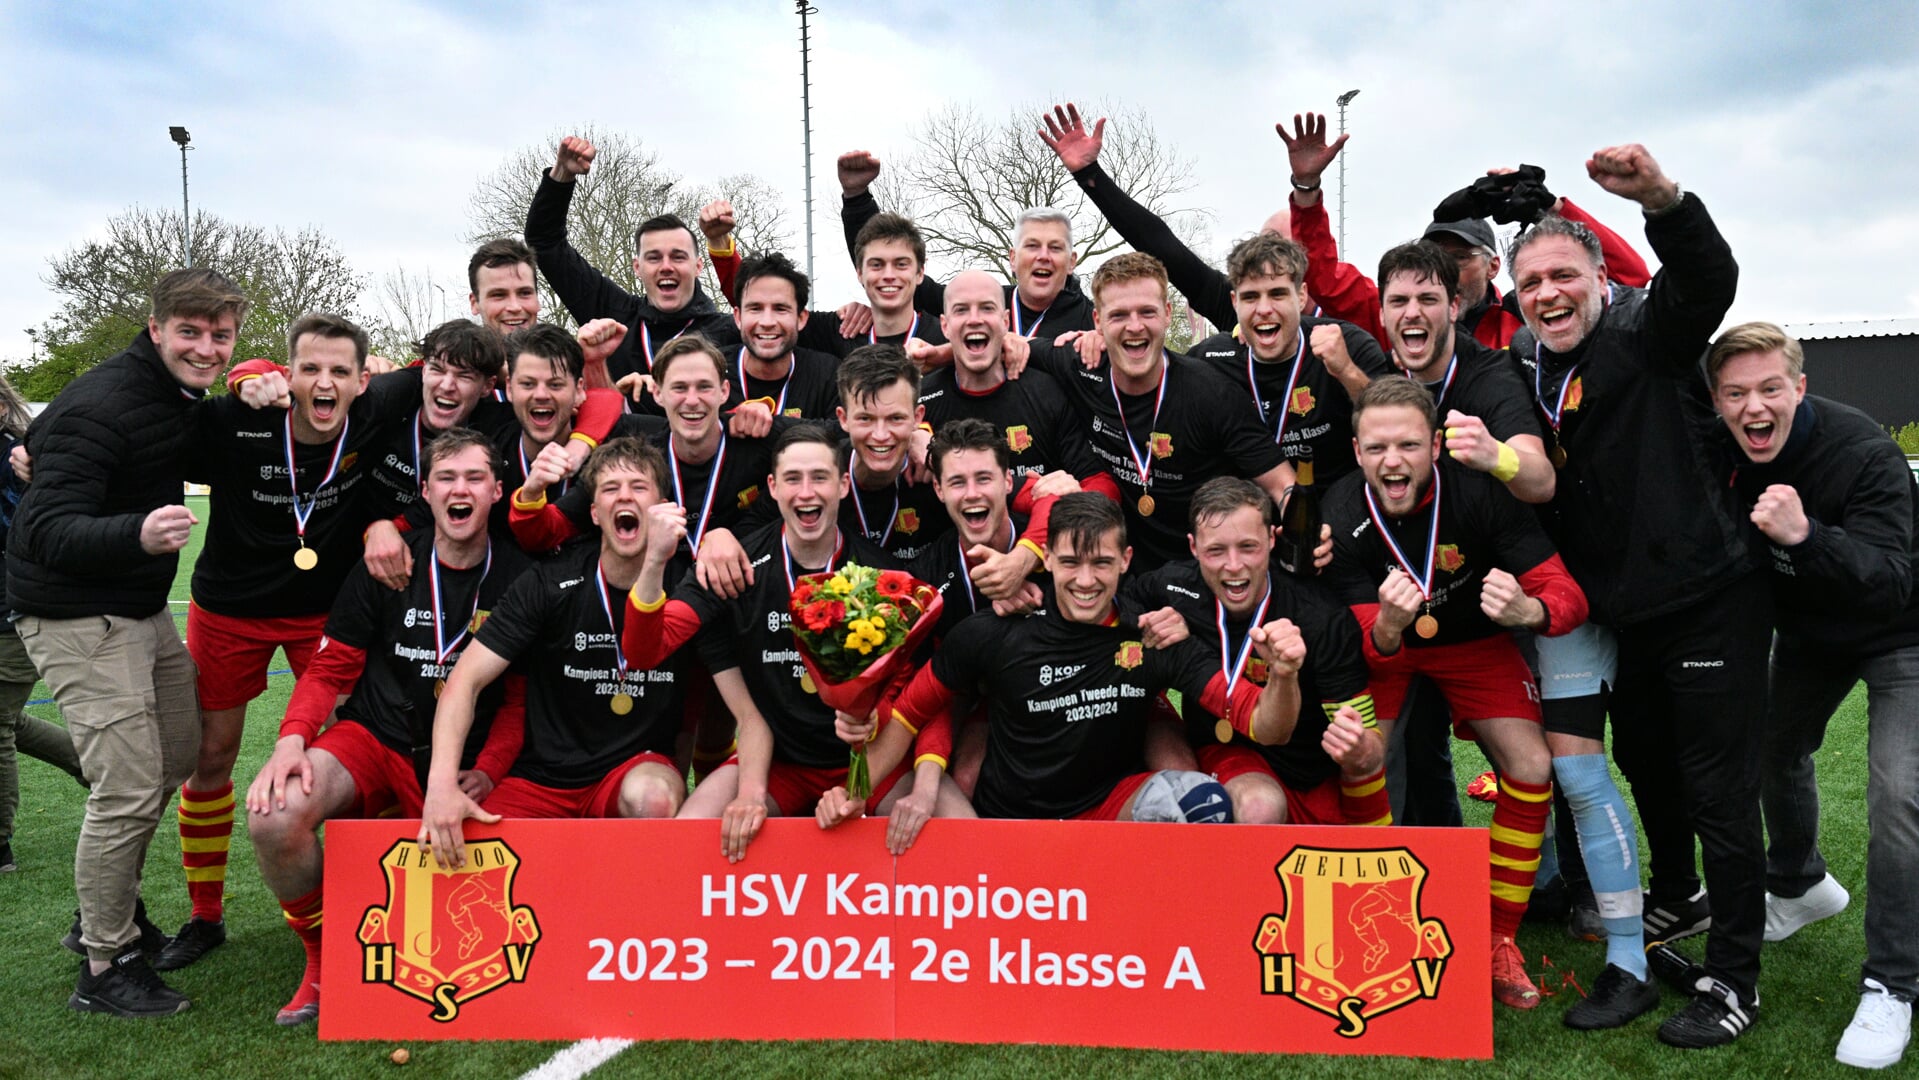 Heel HSV 1 juicht vol trots om de behaalde titel.